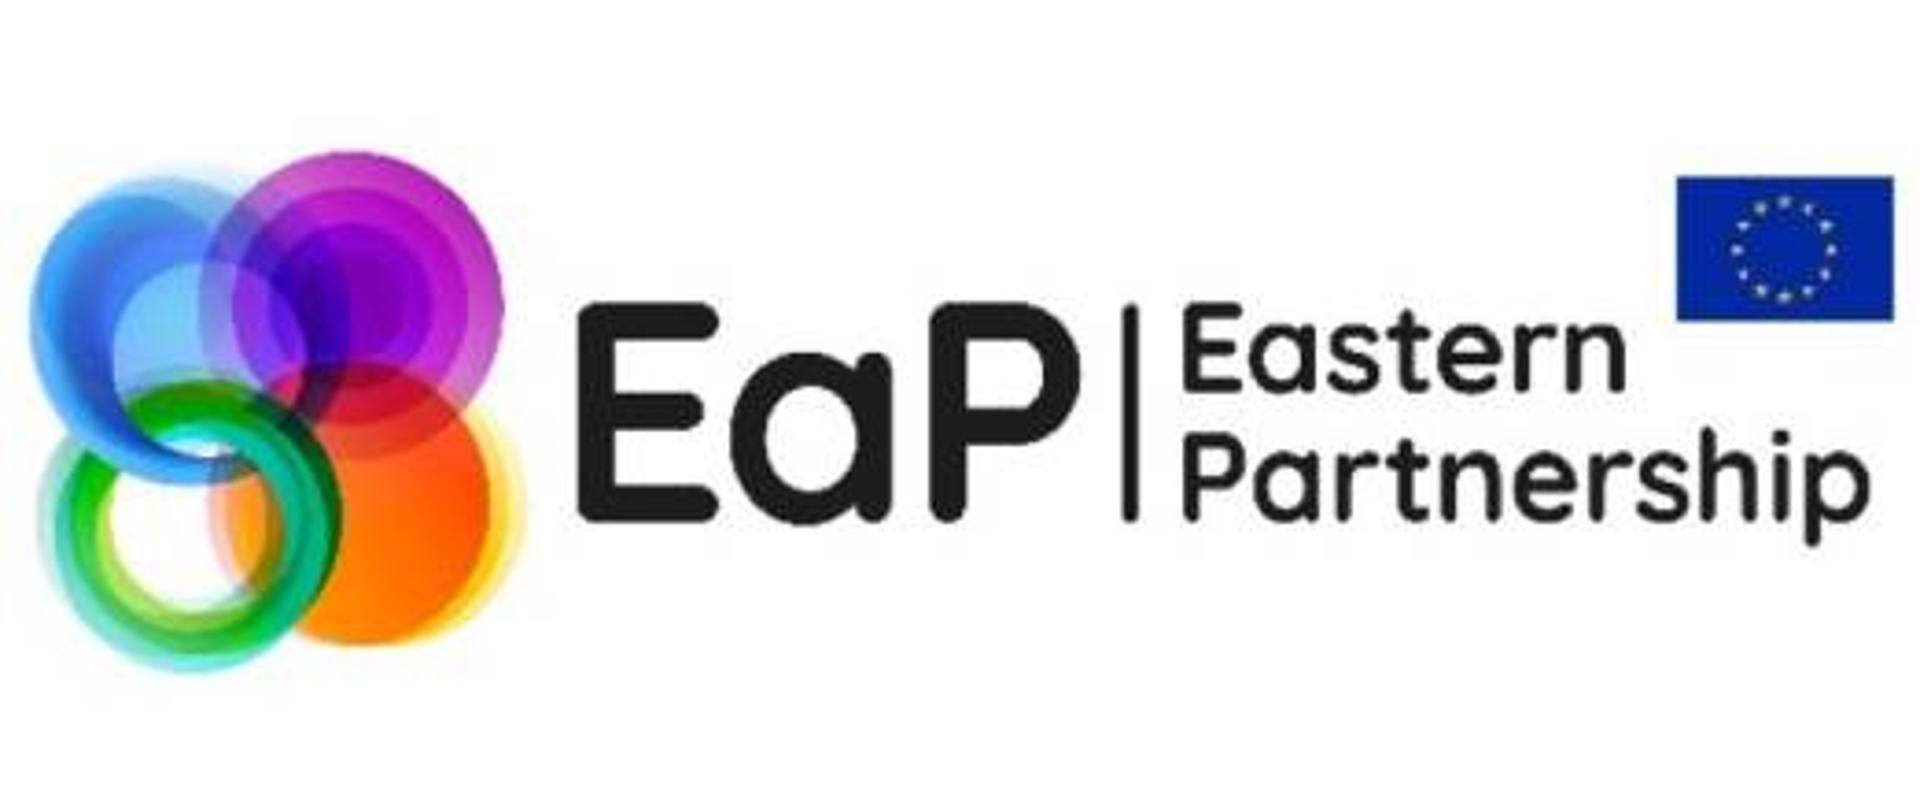 logotyp Partnerstwa Wschodniego: pośrodku skrót EaP, i angielska nazwa Eastern Partnership, po lewej cztery tęczowe, połączone ze sobą koła, a po prawej - flaga UE